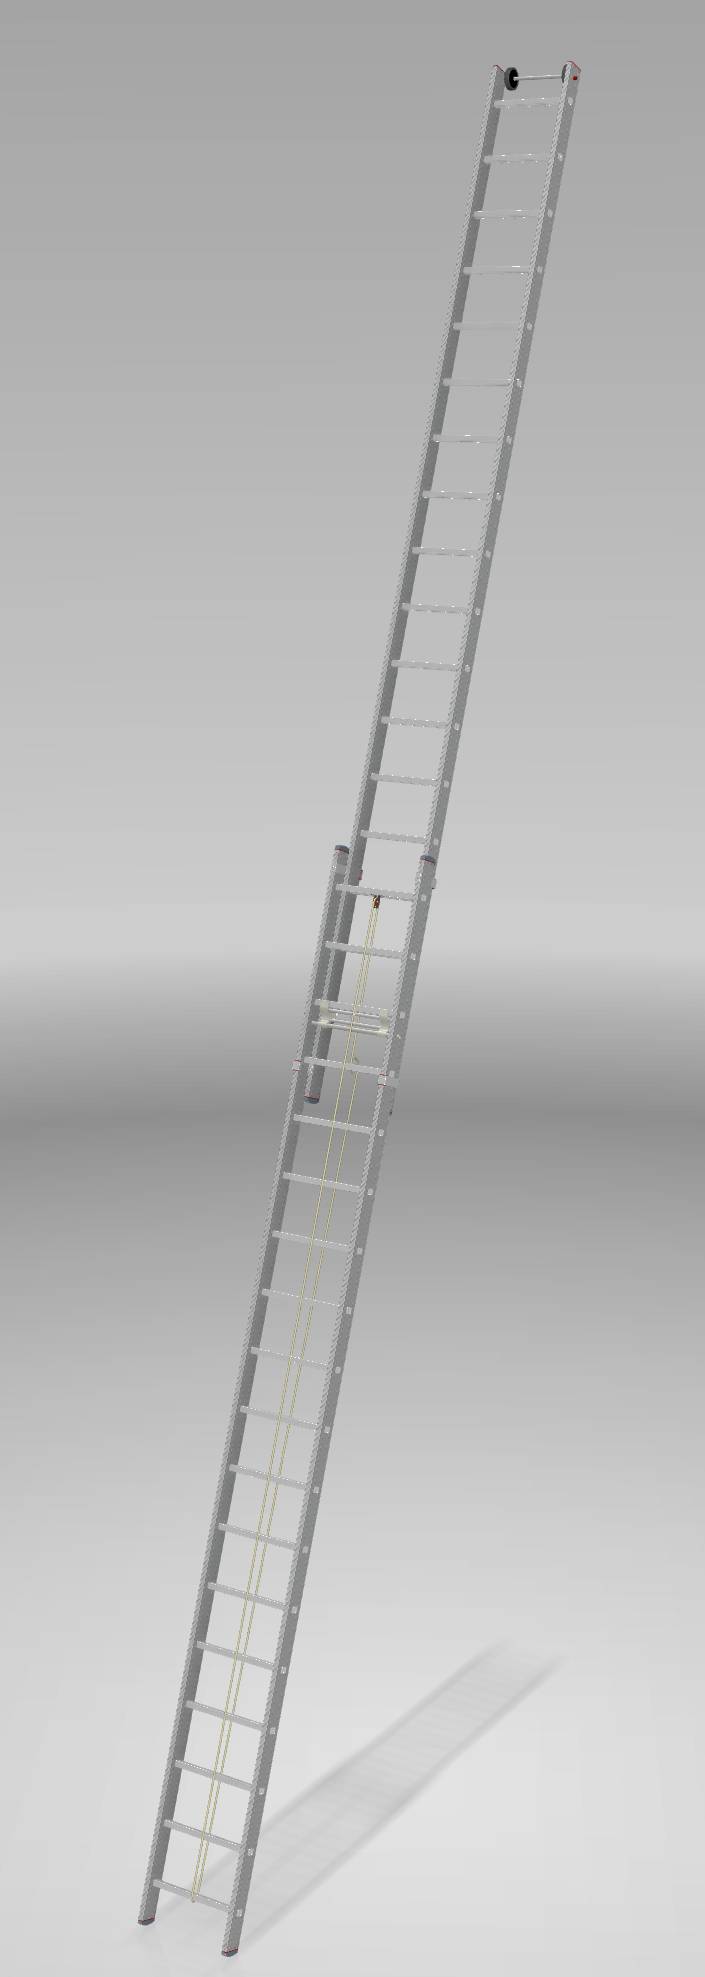 Индустриальная алюминиевая двухсекционная тросовая лестница NV5240 артикул 5240218